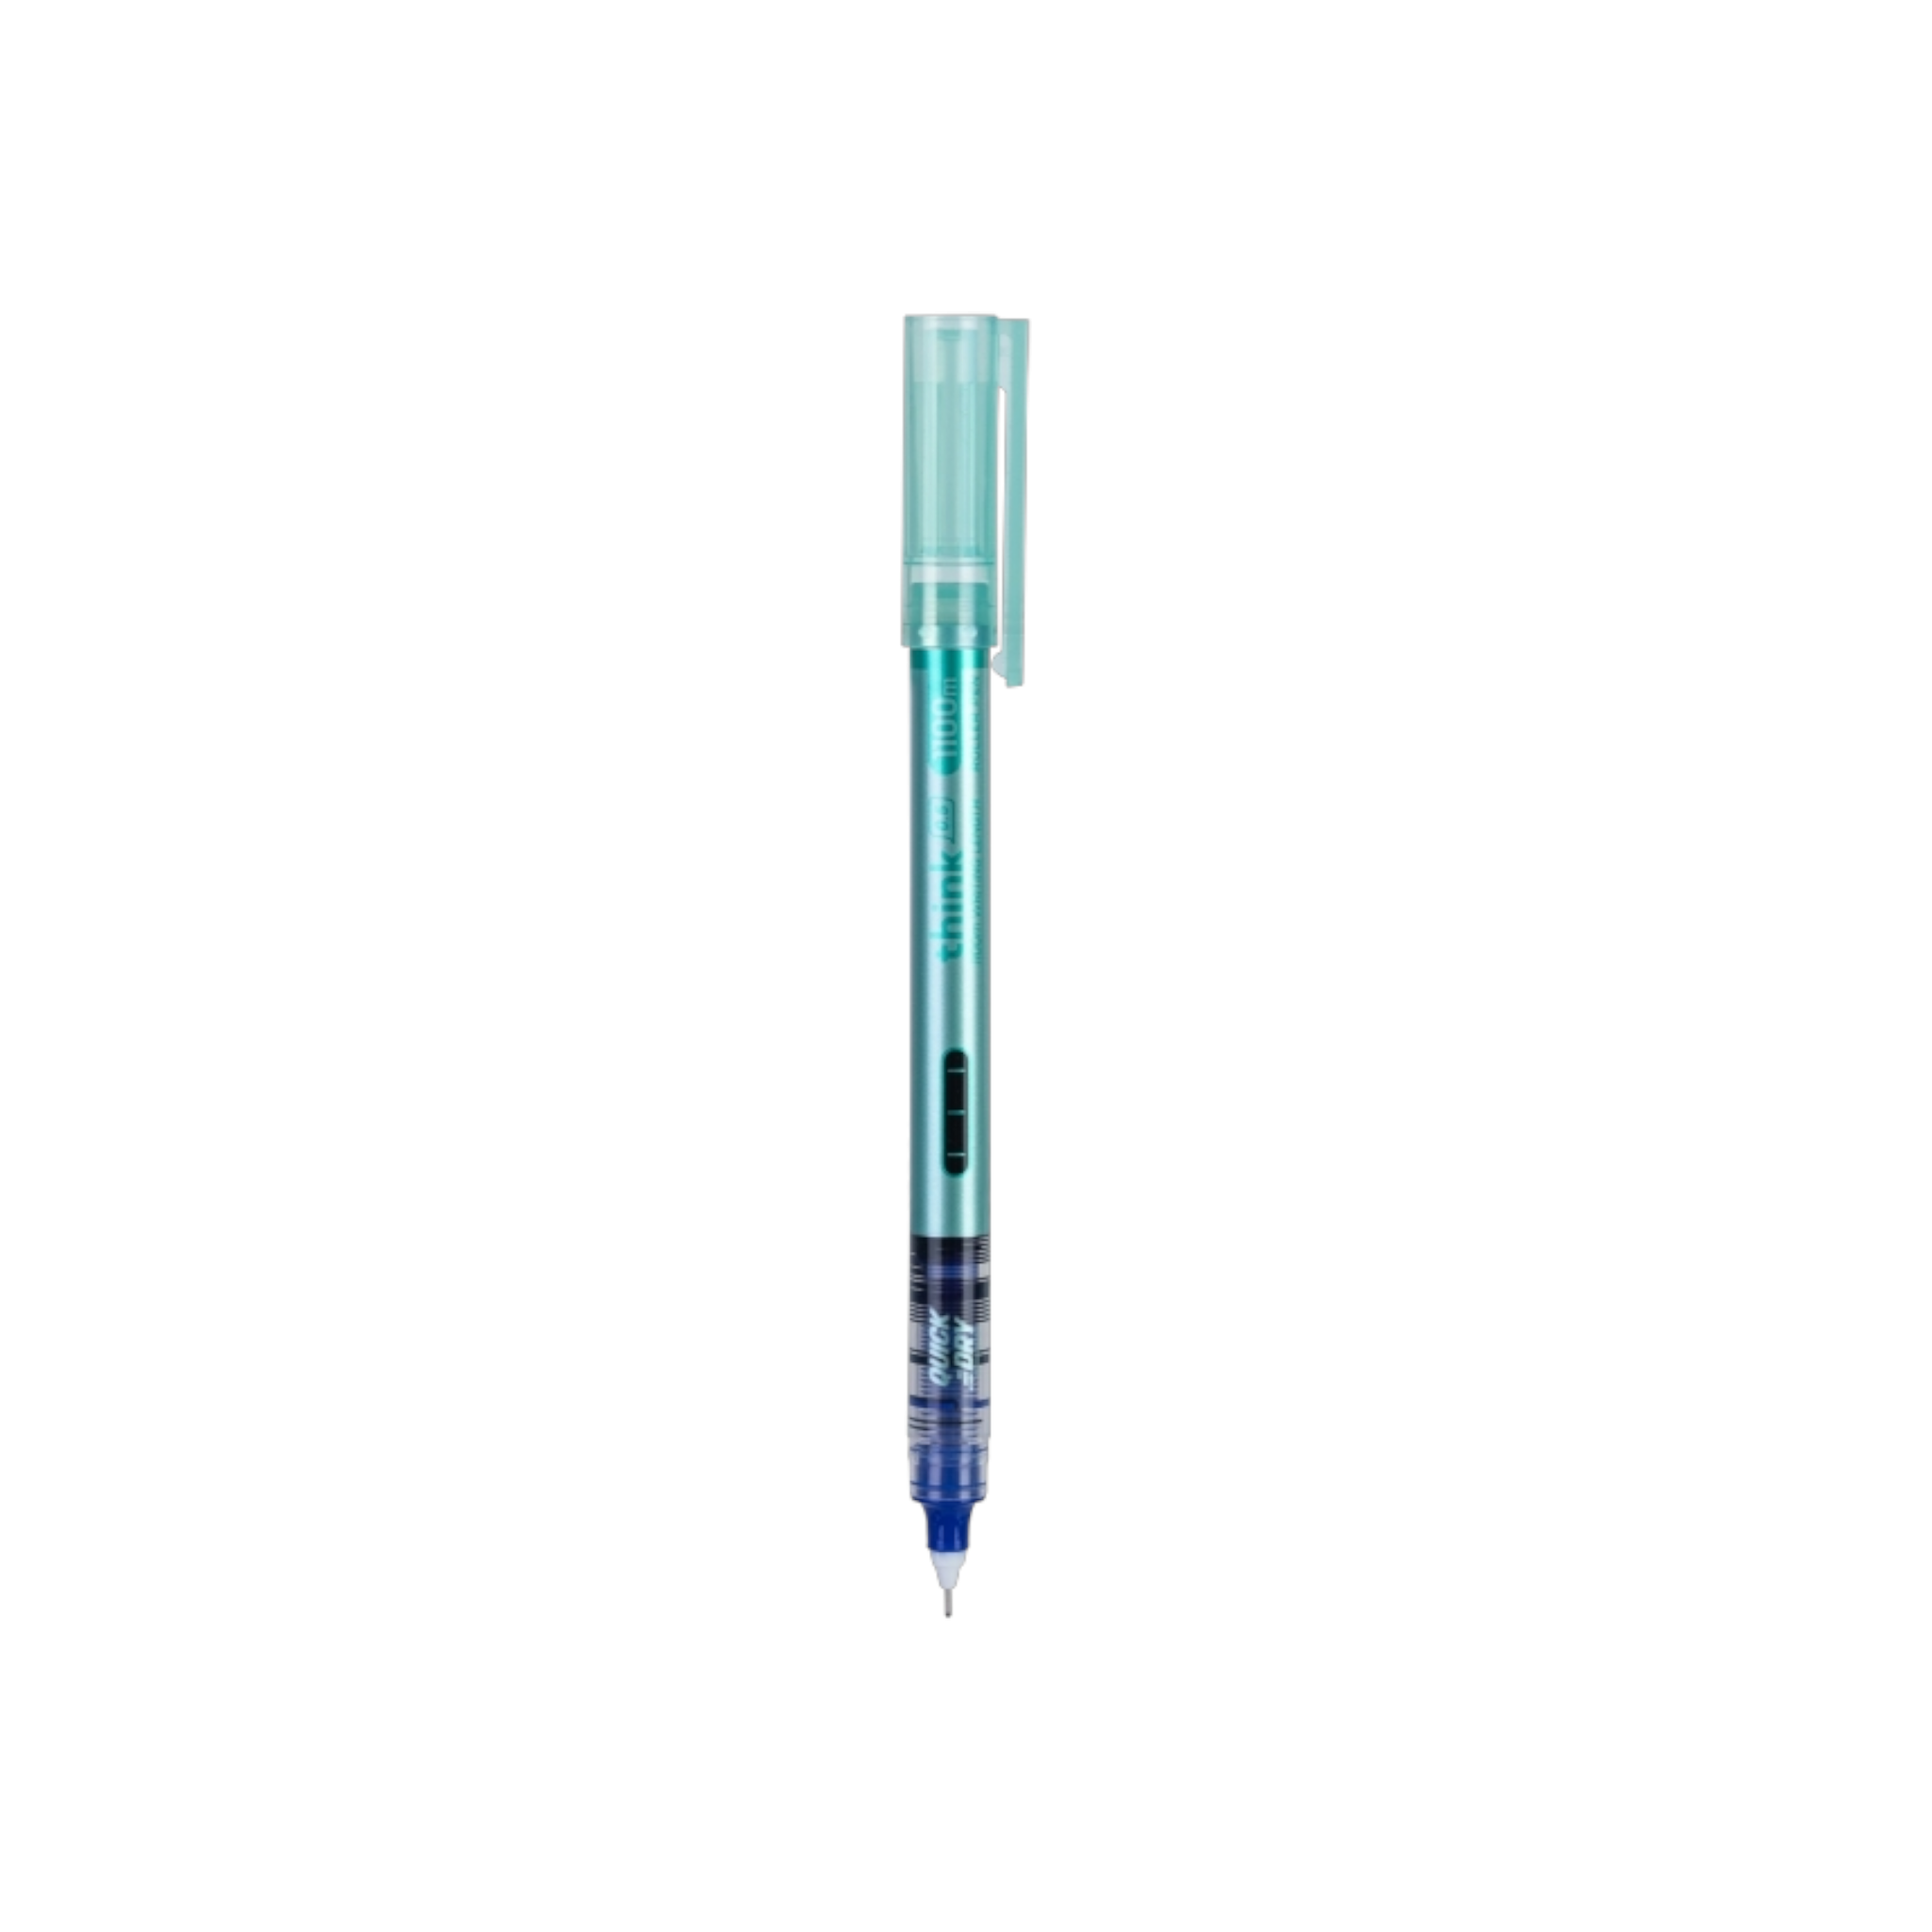 Deli Think Roller Pen Needle Tip 0.5mm Blue Ink